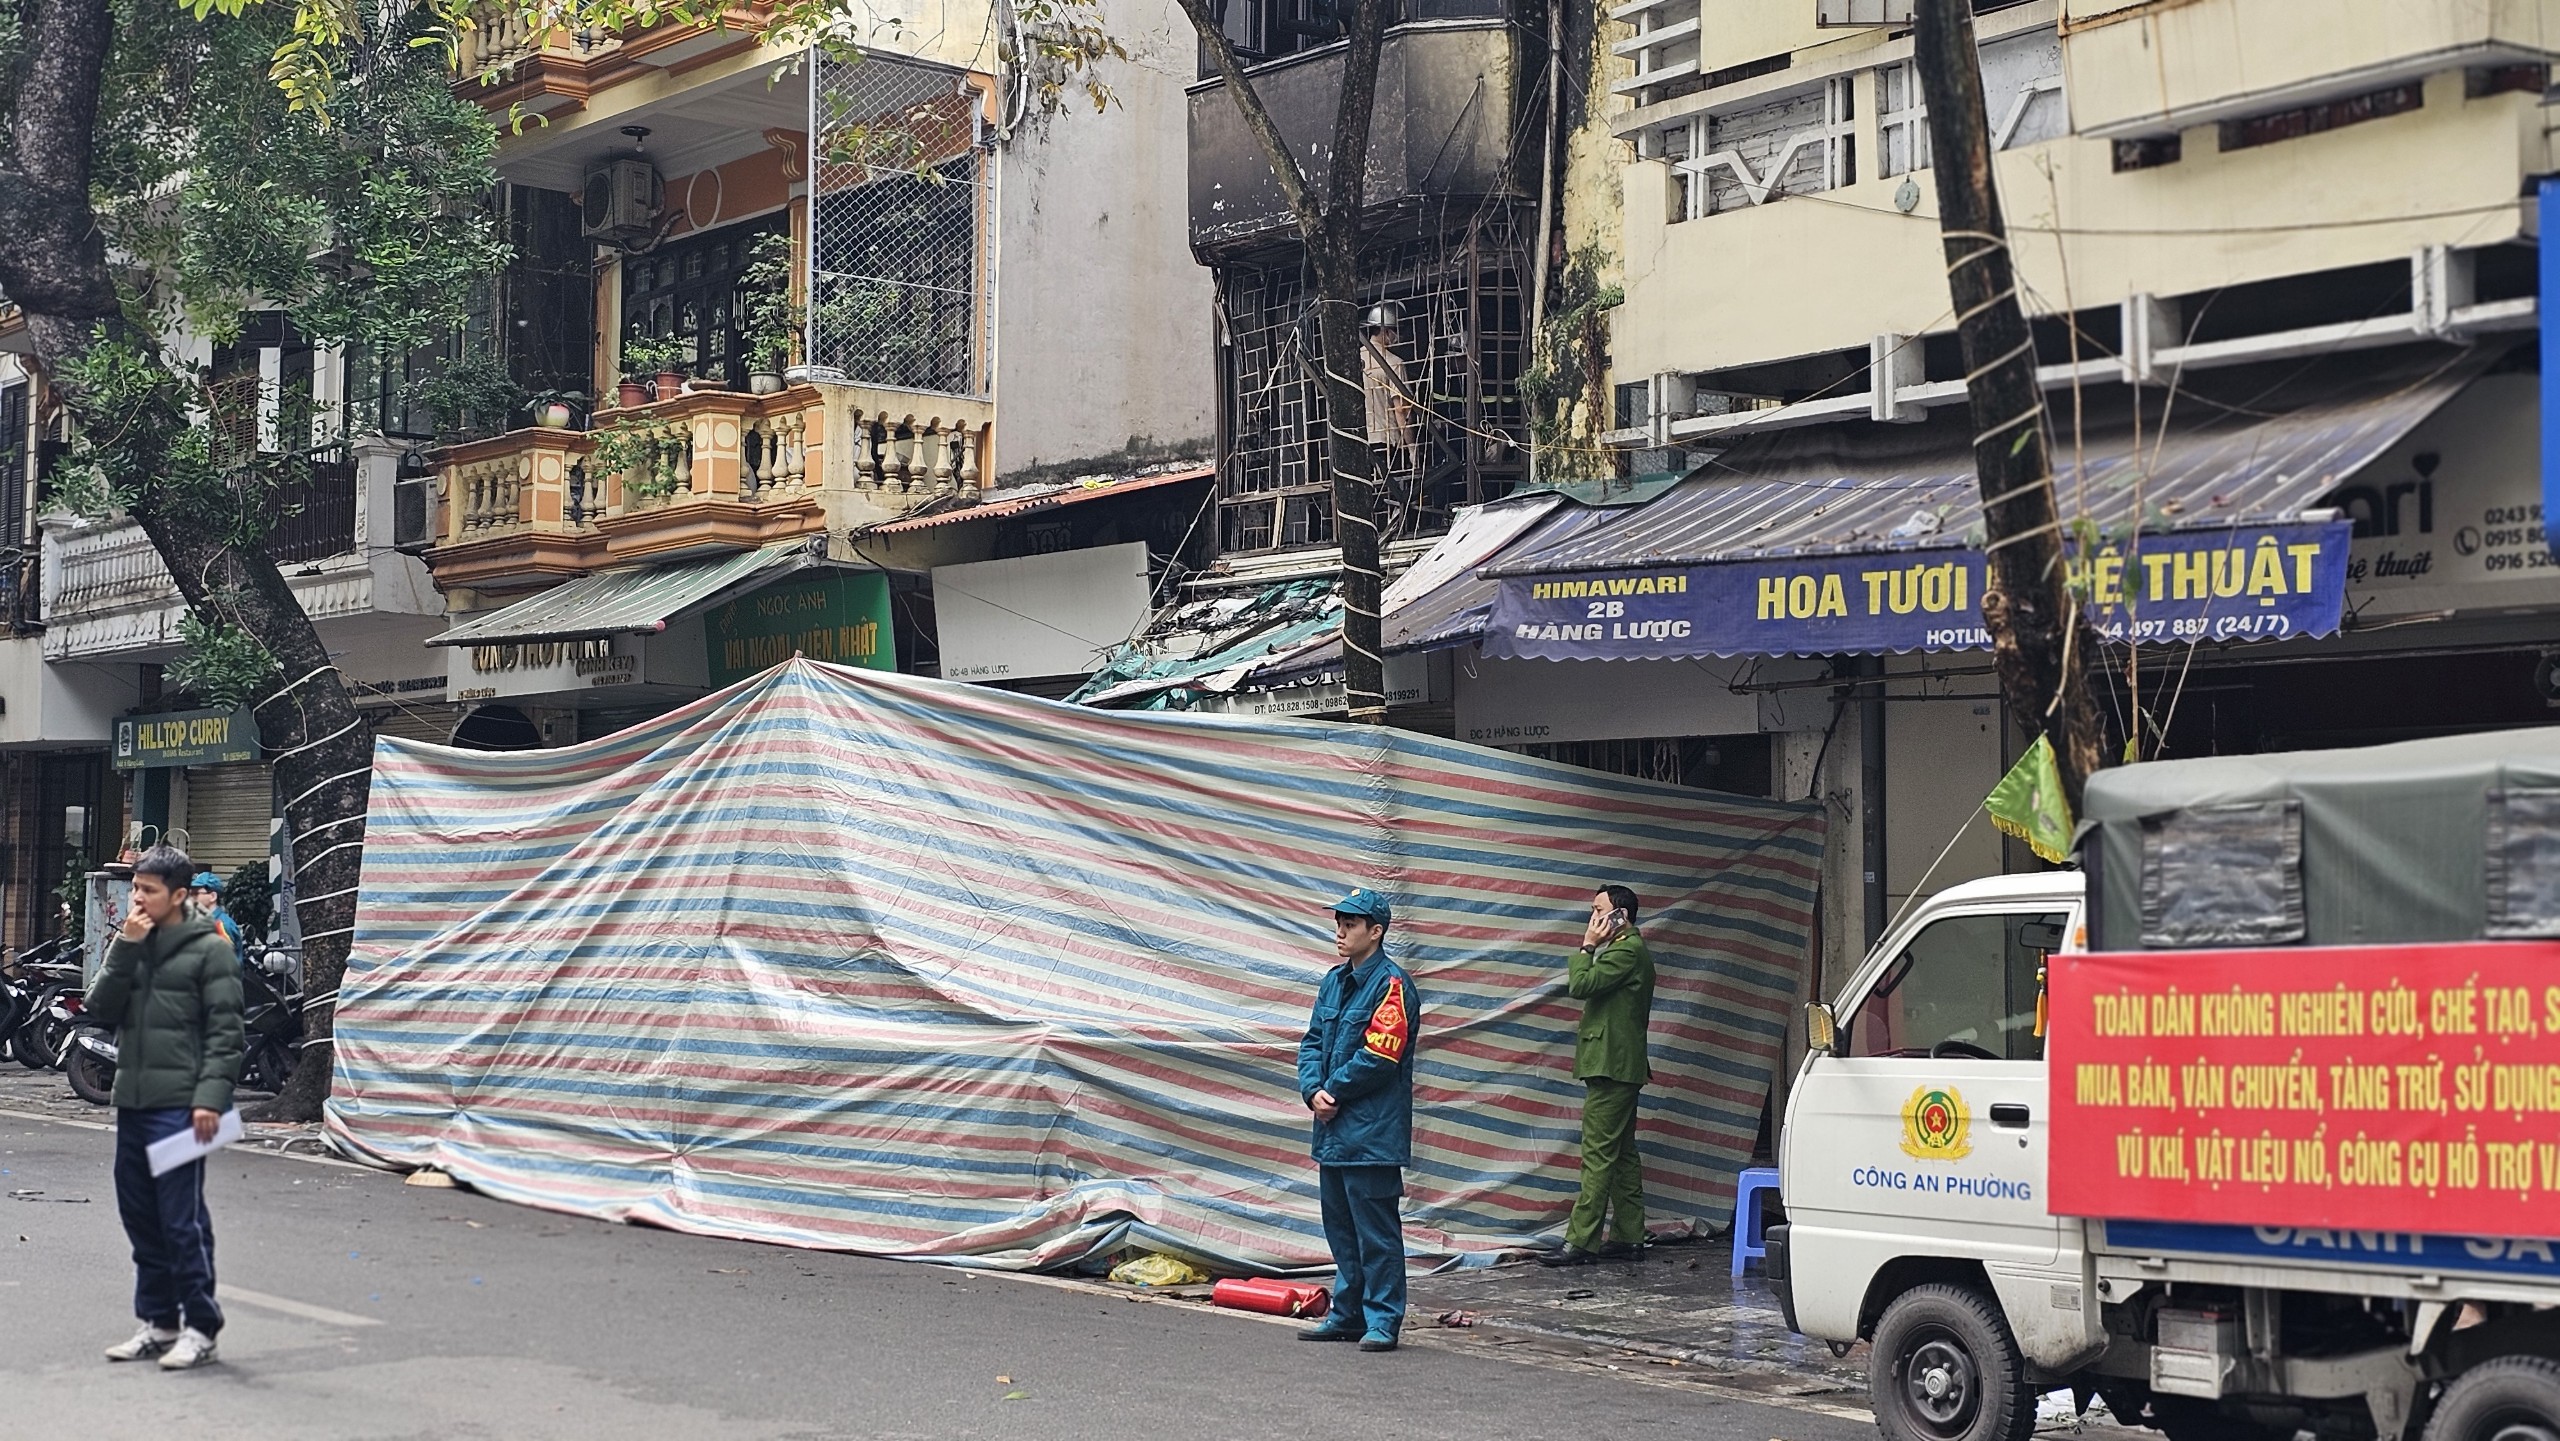 Tan hoang hiện trường vụ cháy khiến 4 người tử vong ở Hà Nội- Ảnh 3.